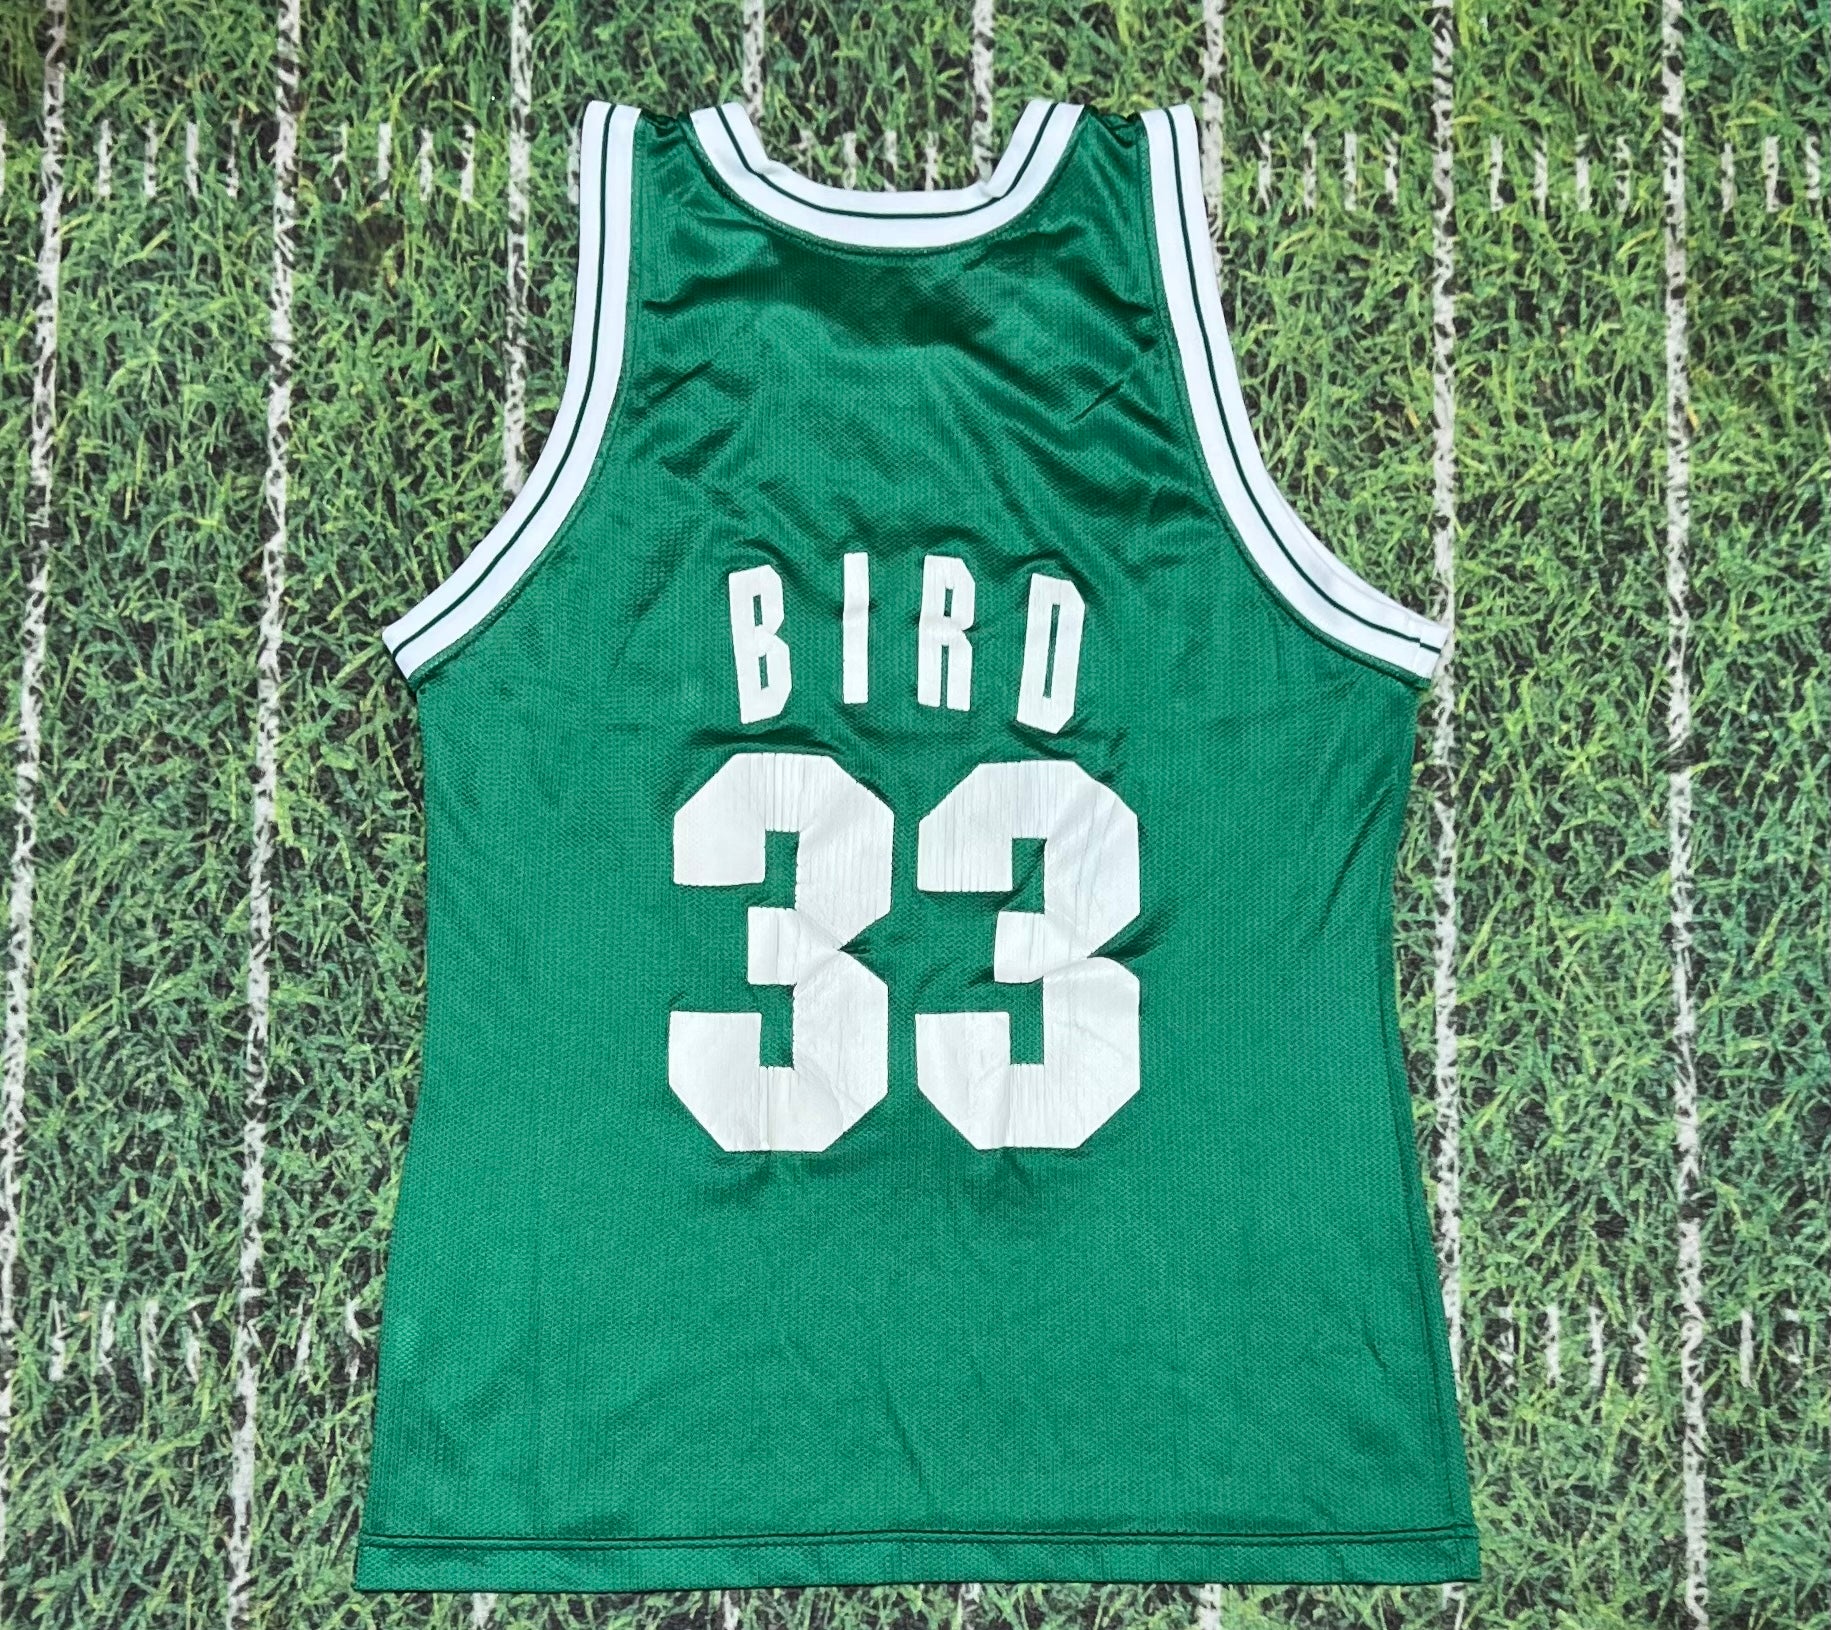 Larry Bird Shirt, Larry Bird Basketball Shirt - Cherrycatshop